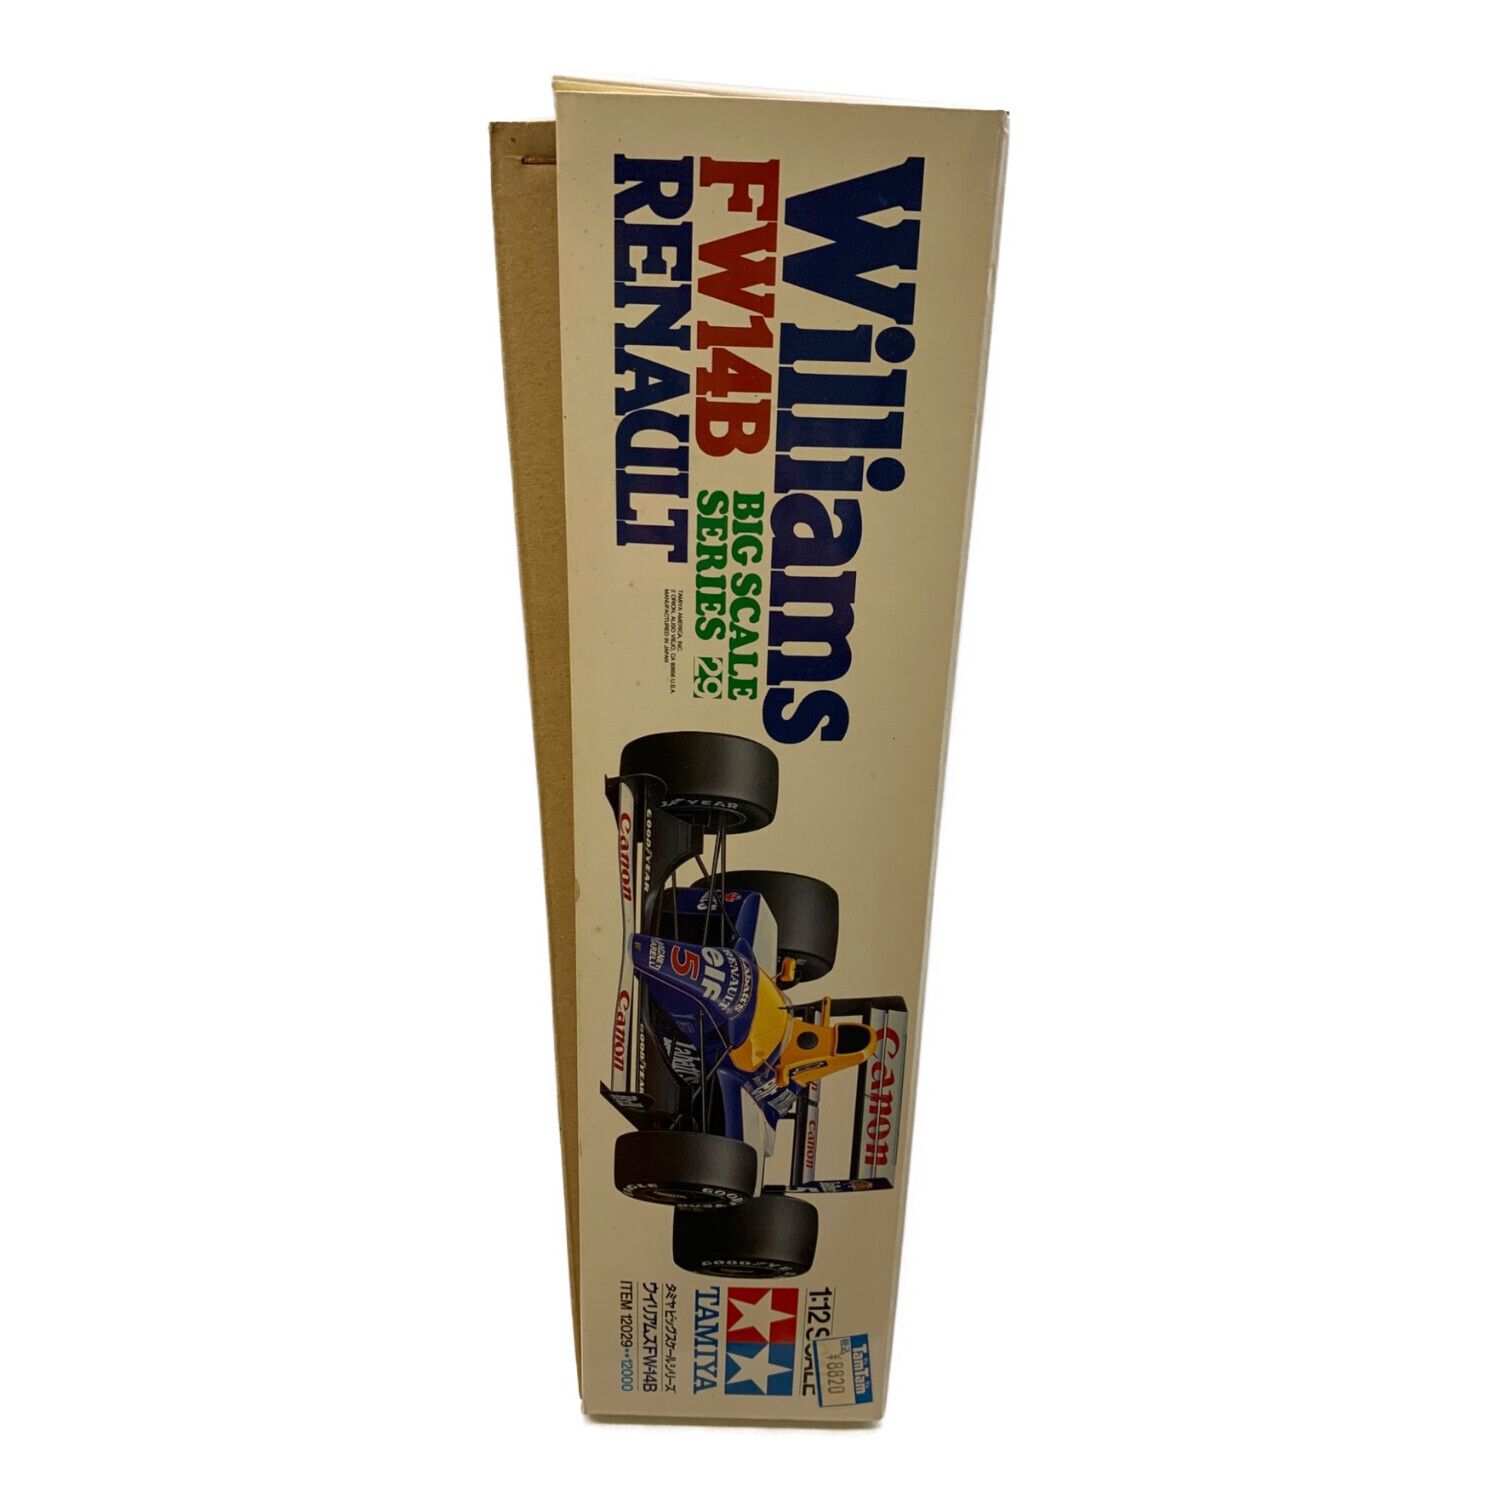 TAMIYA (タミヤ) プラモデル 車 1/12 ウィリアムズ FW14B ルノー